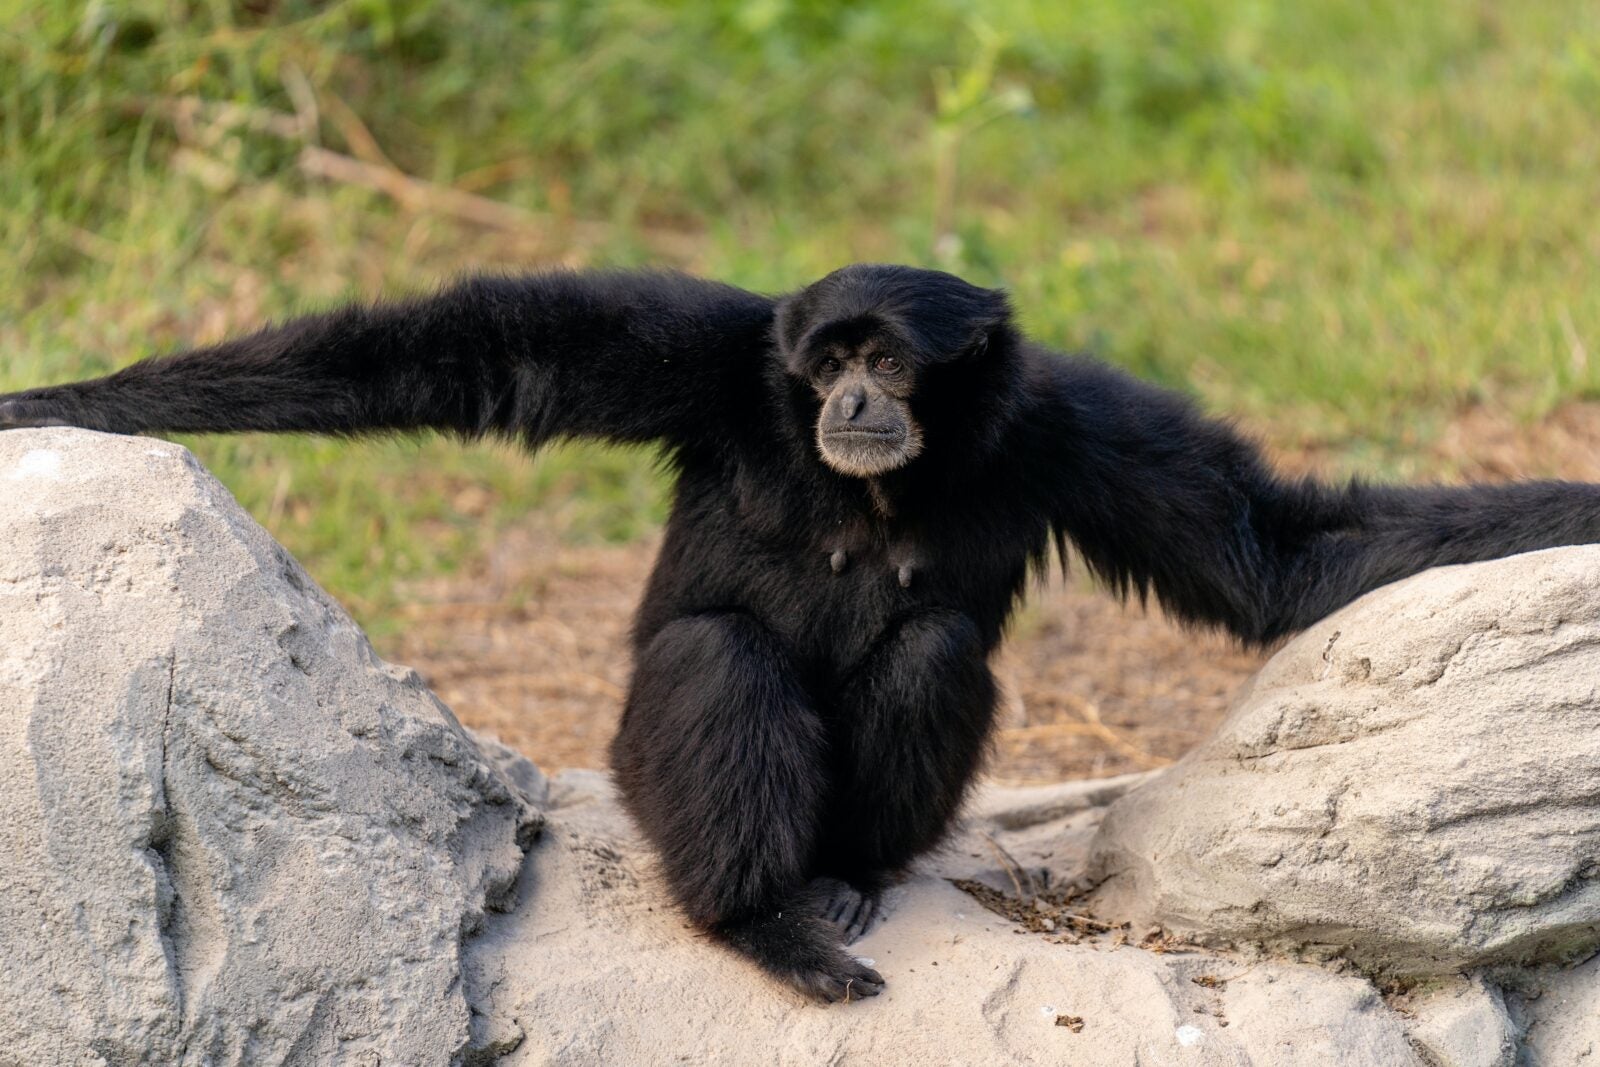 A Siamang monkey.